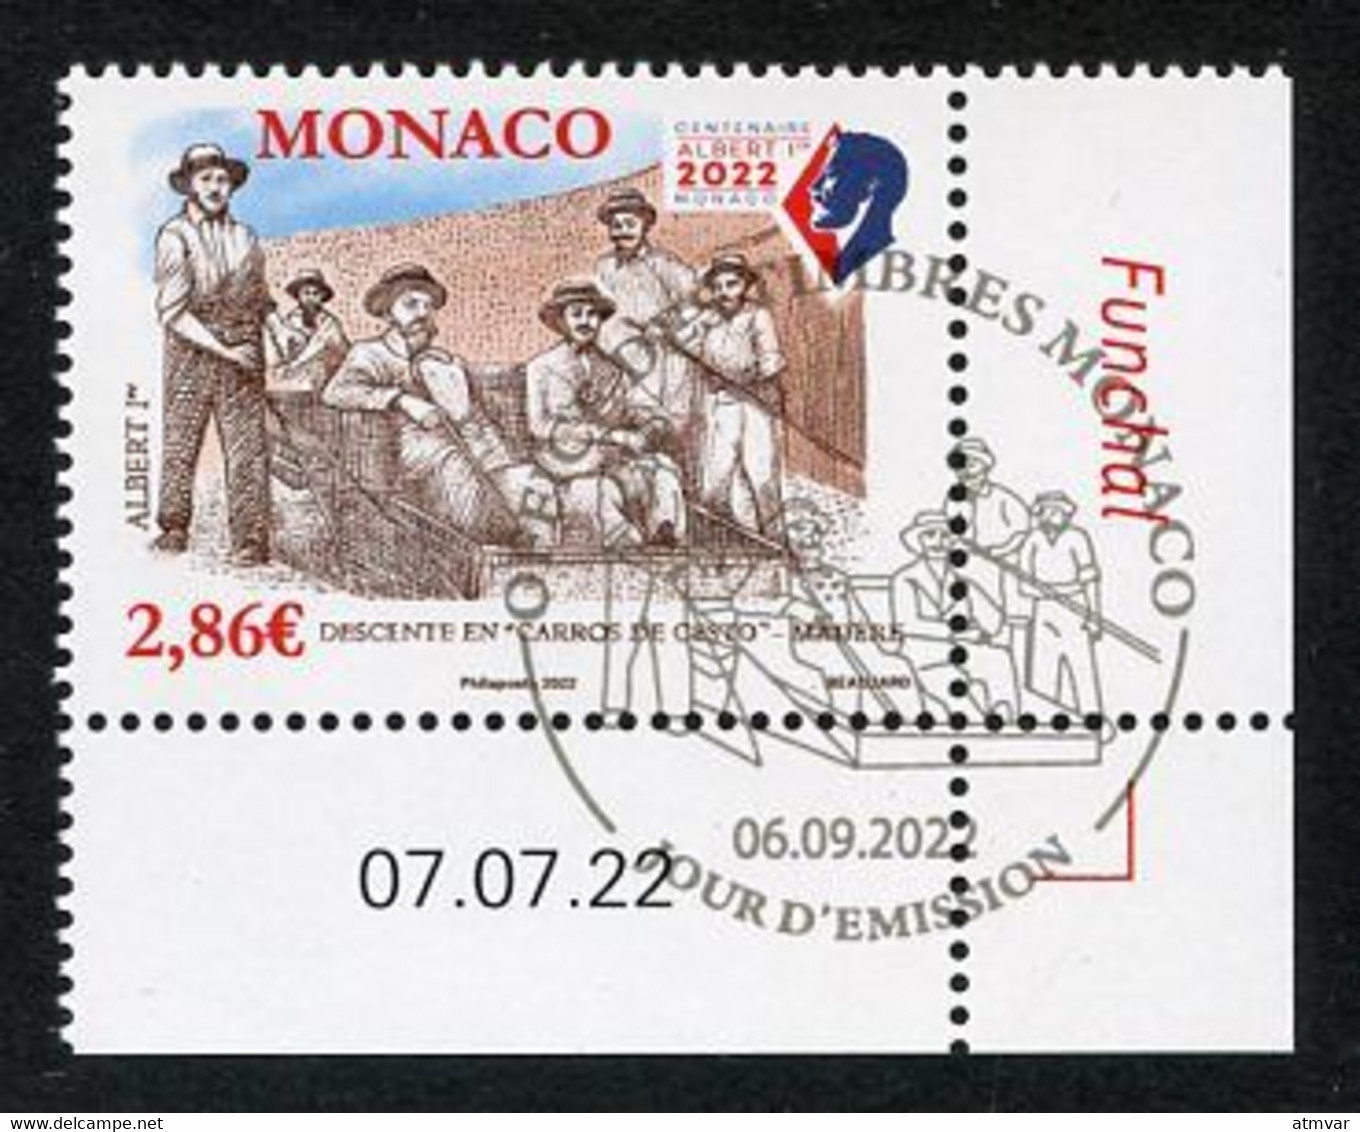 MONACO (2022) Albert 1er Madère Madeira Funchal, Descente En Carros De Cesto - Coin Daté - Oblitérés